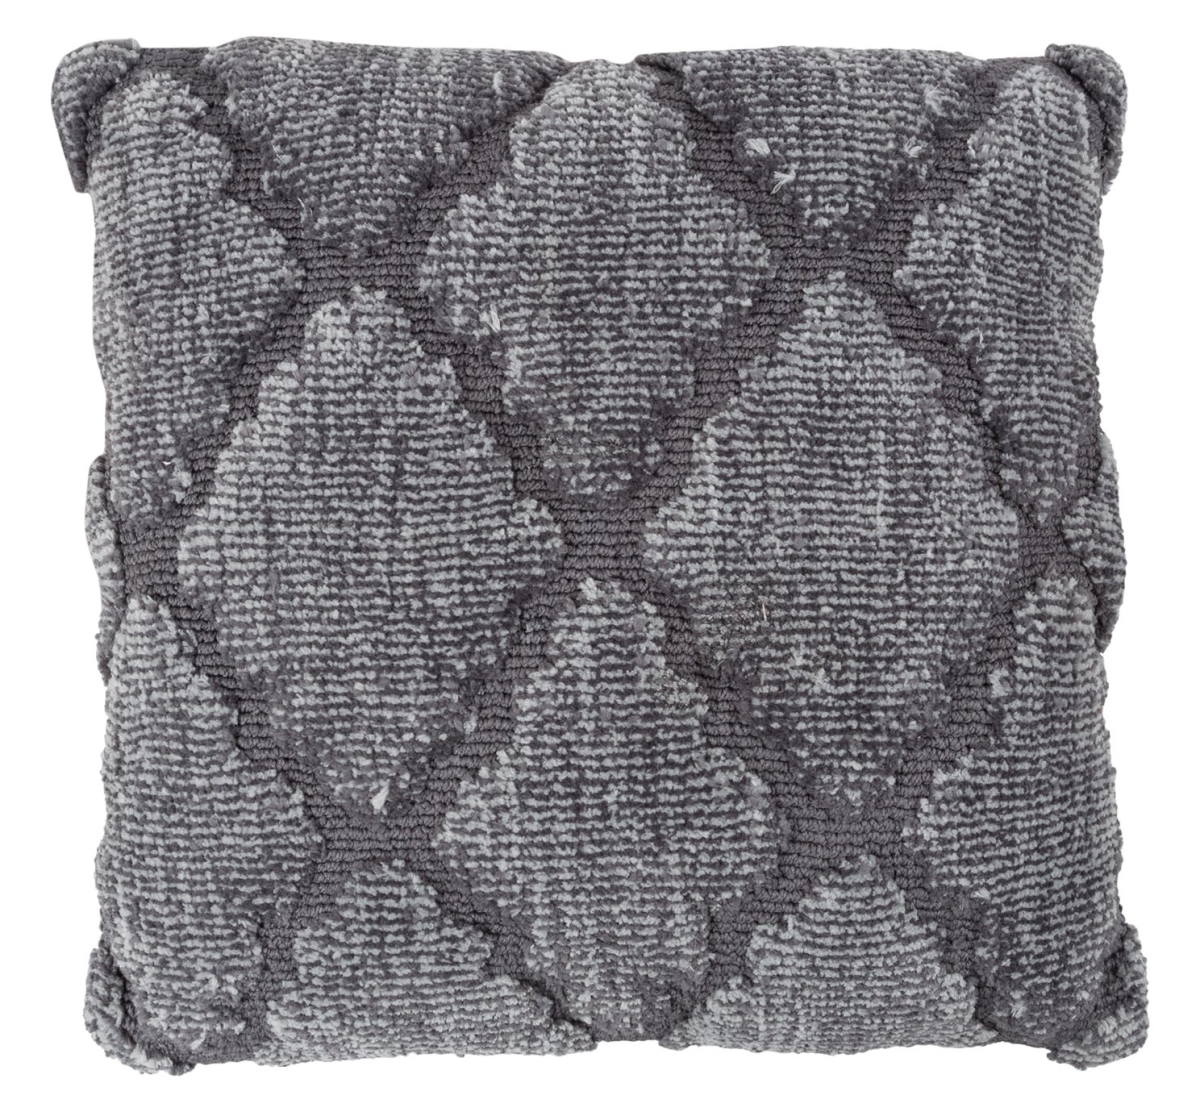 66a-27502 Modern Throw Pillow, Grey